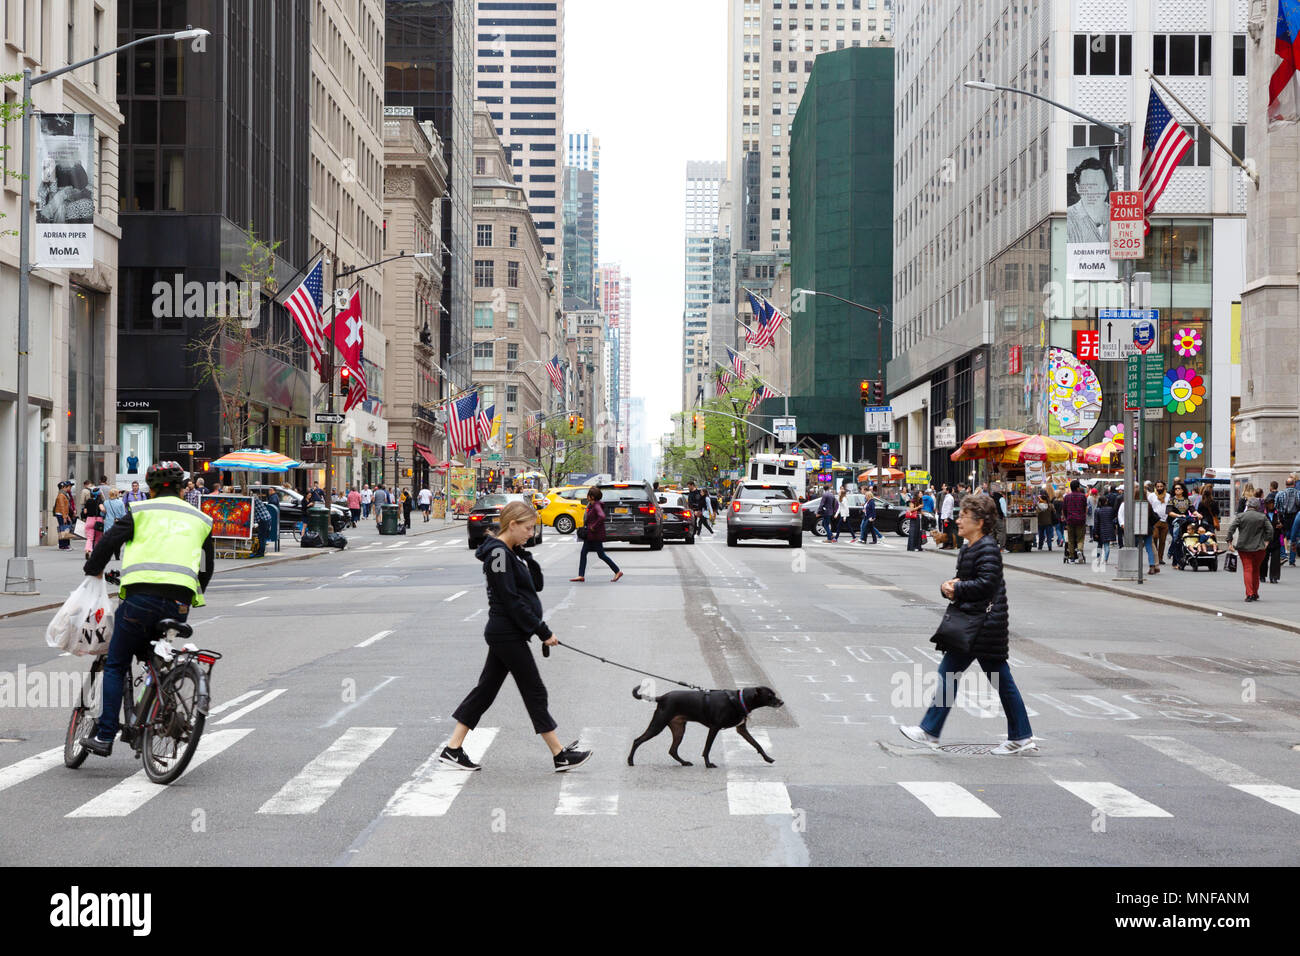 Fifth Avenue New York - Fußgänger, Spaziergang mit dem Hund und Radfahrer Kreuzung 5th Avenue, New York City, USA Stockfoto